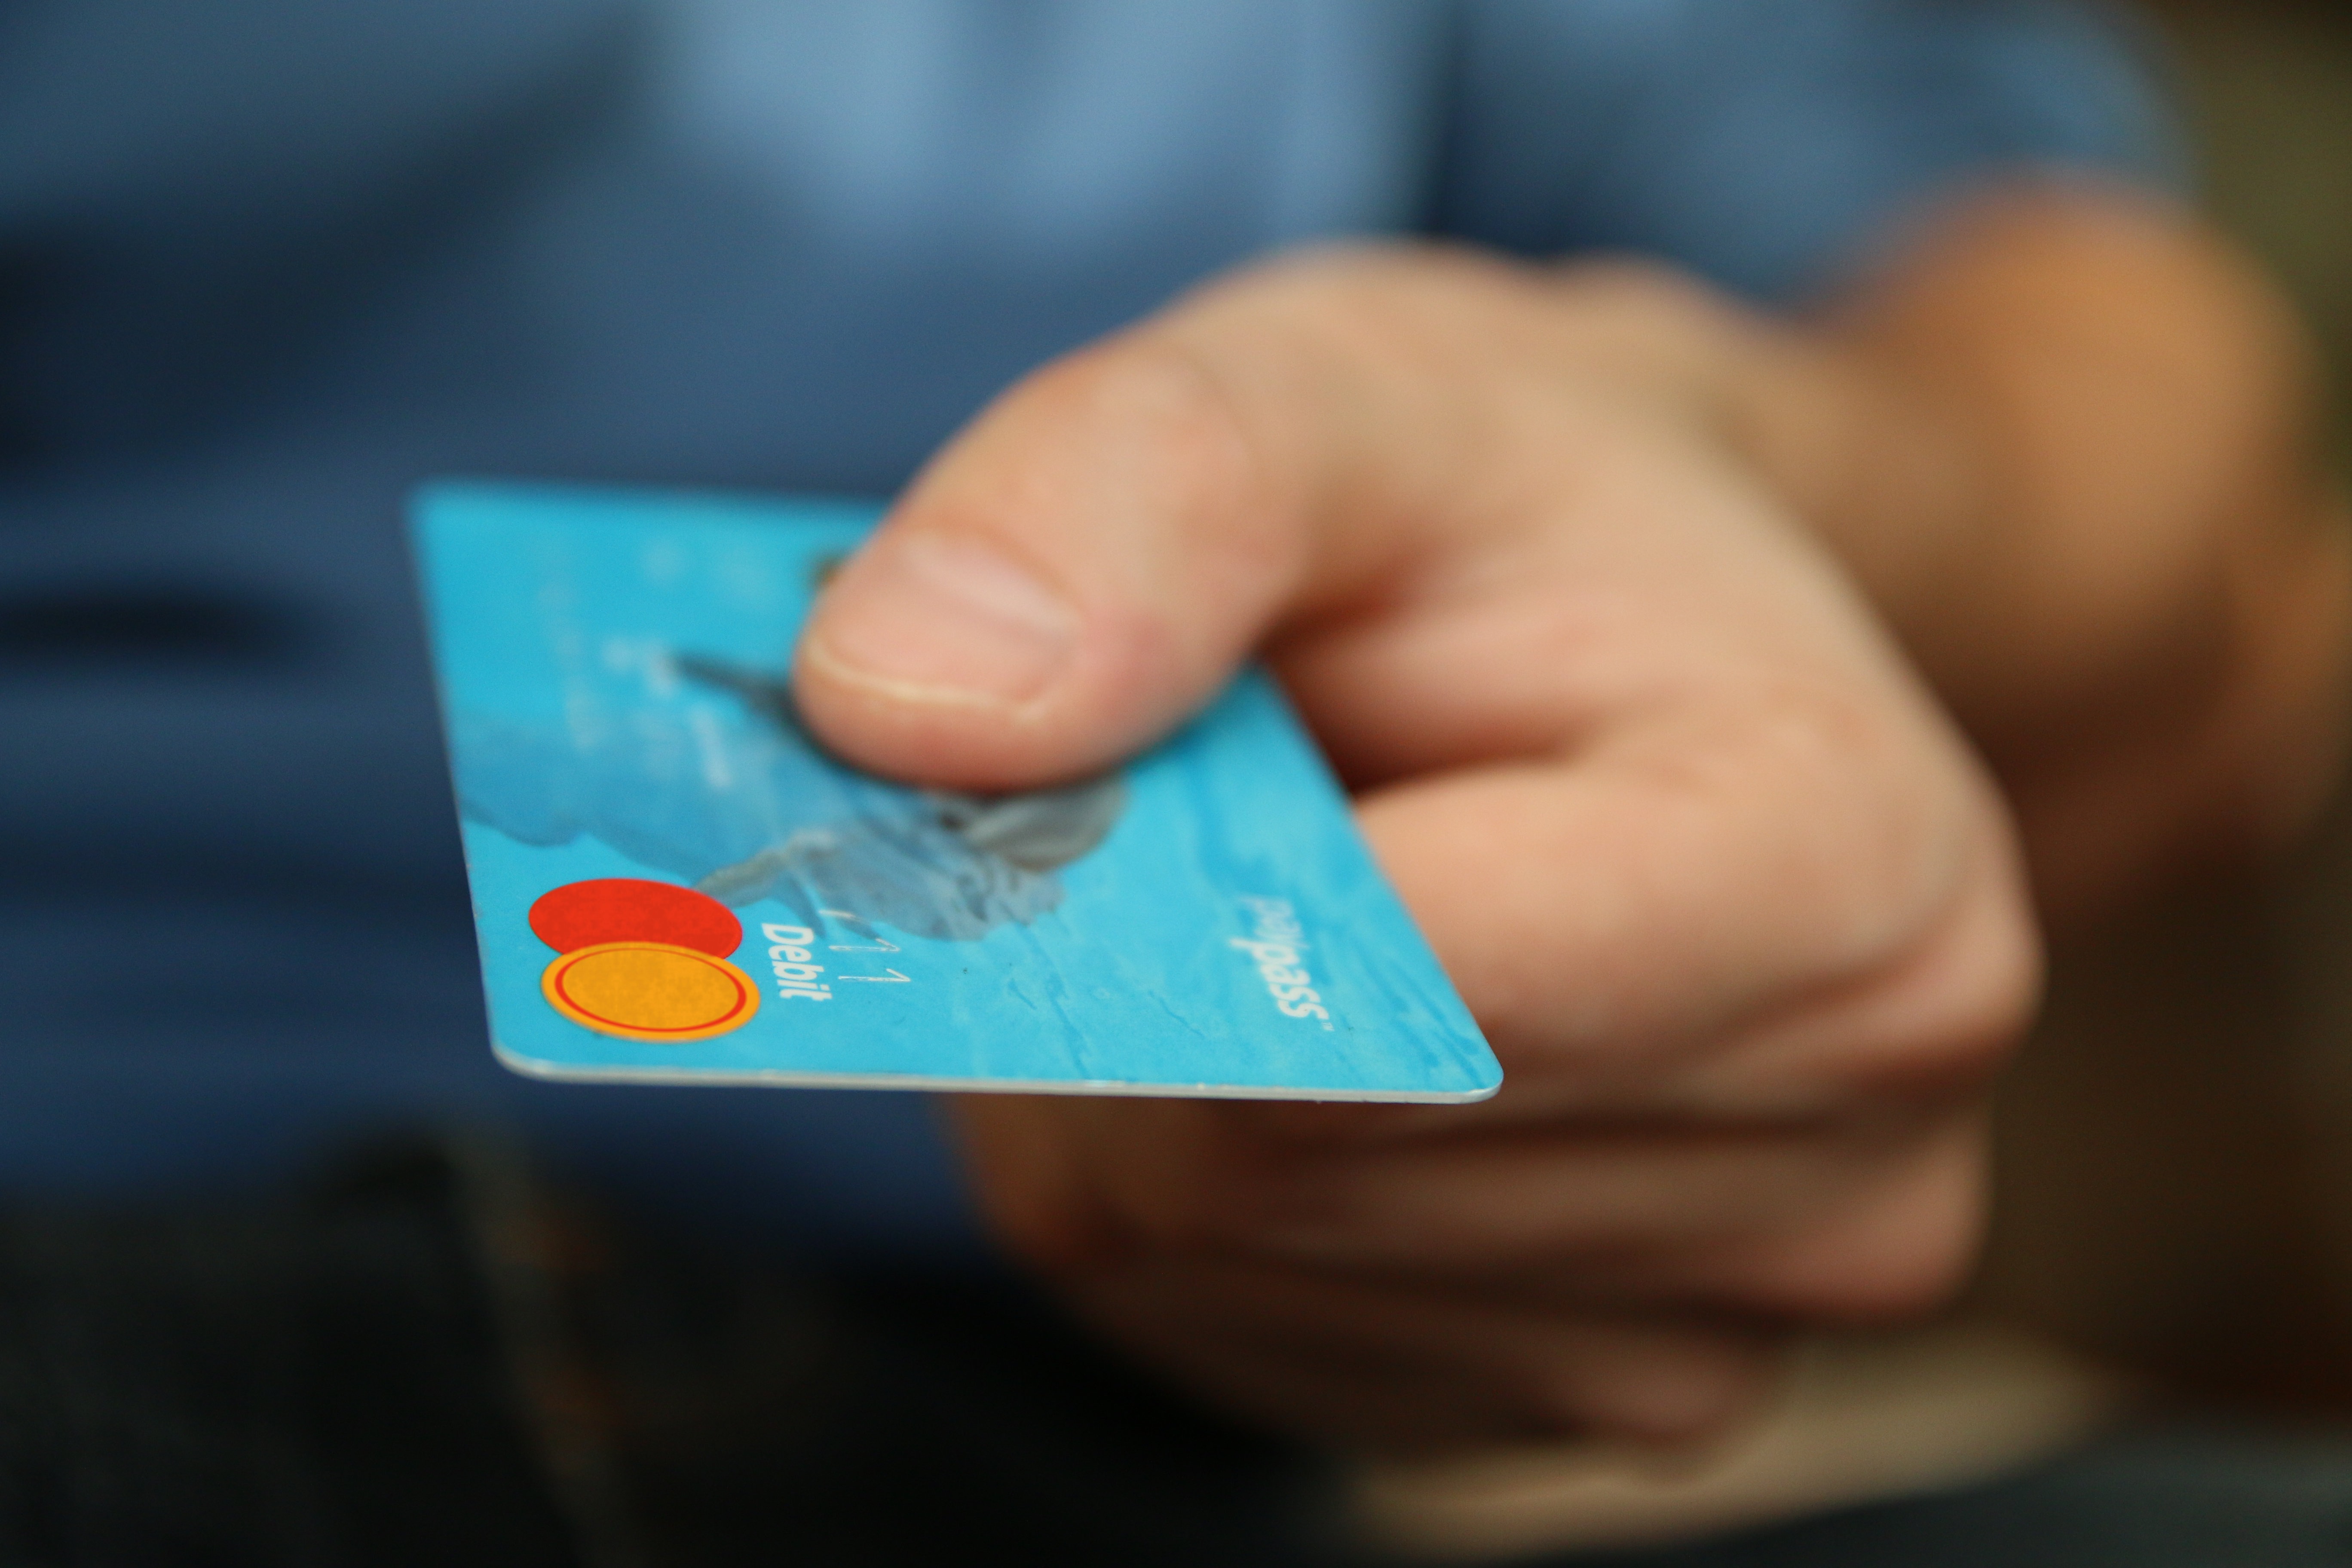 A hand holding a debit card.